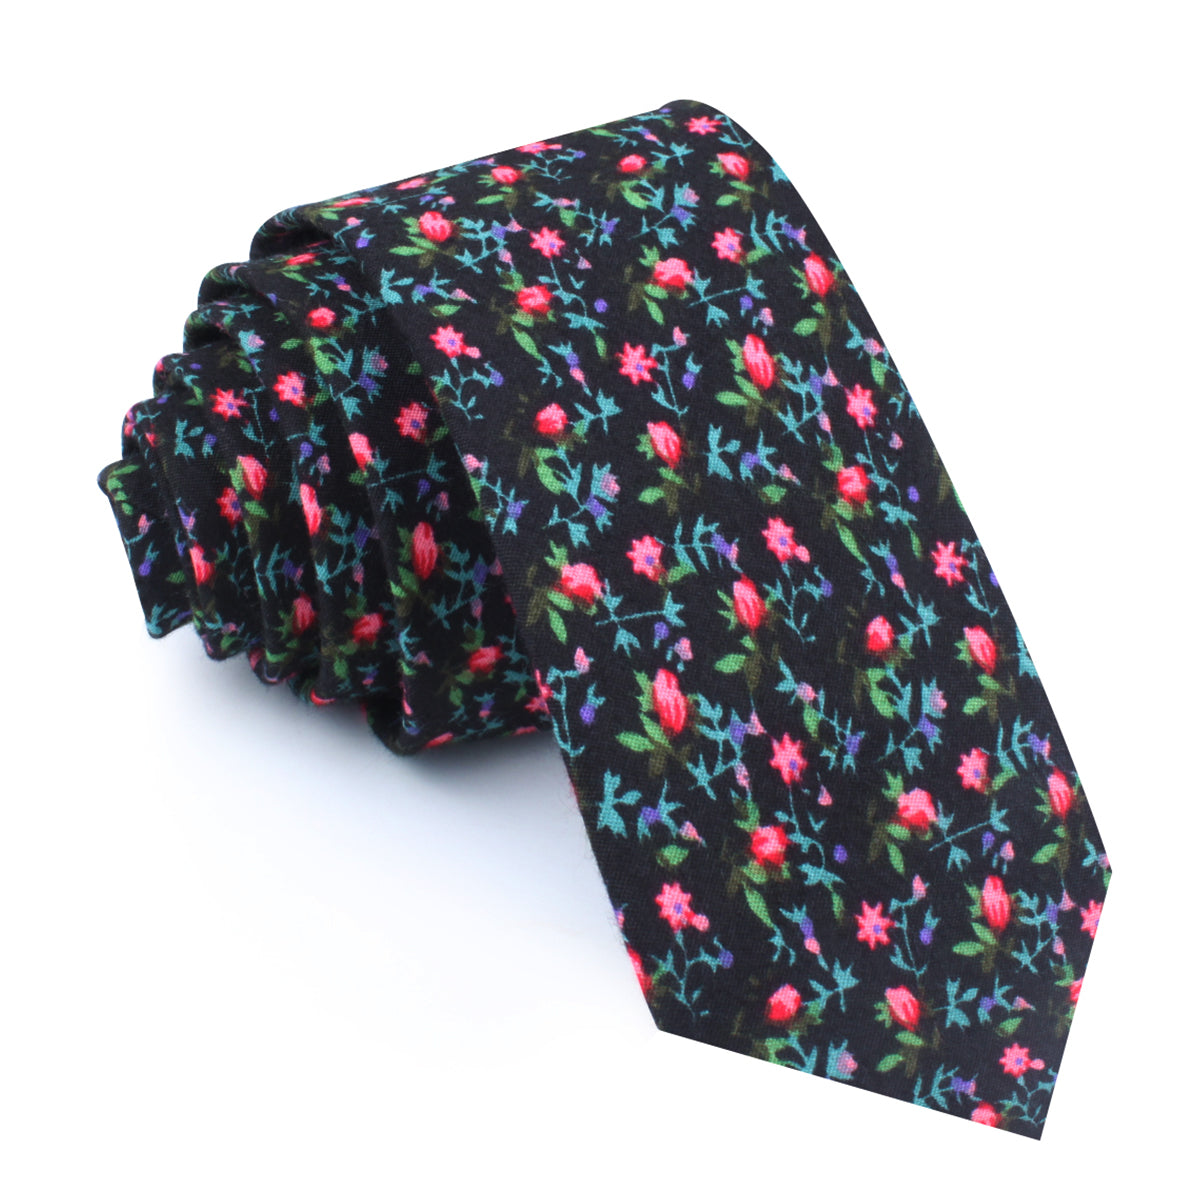 Kenrokuen Japanese Flower Skinny Tie Black Floral Wedding Slim Ties